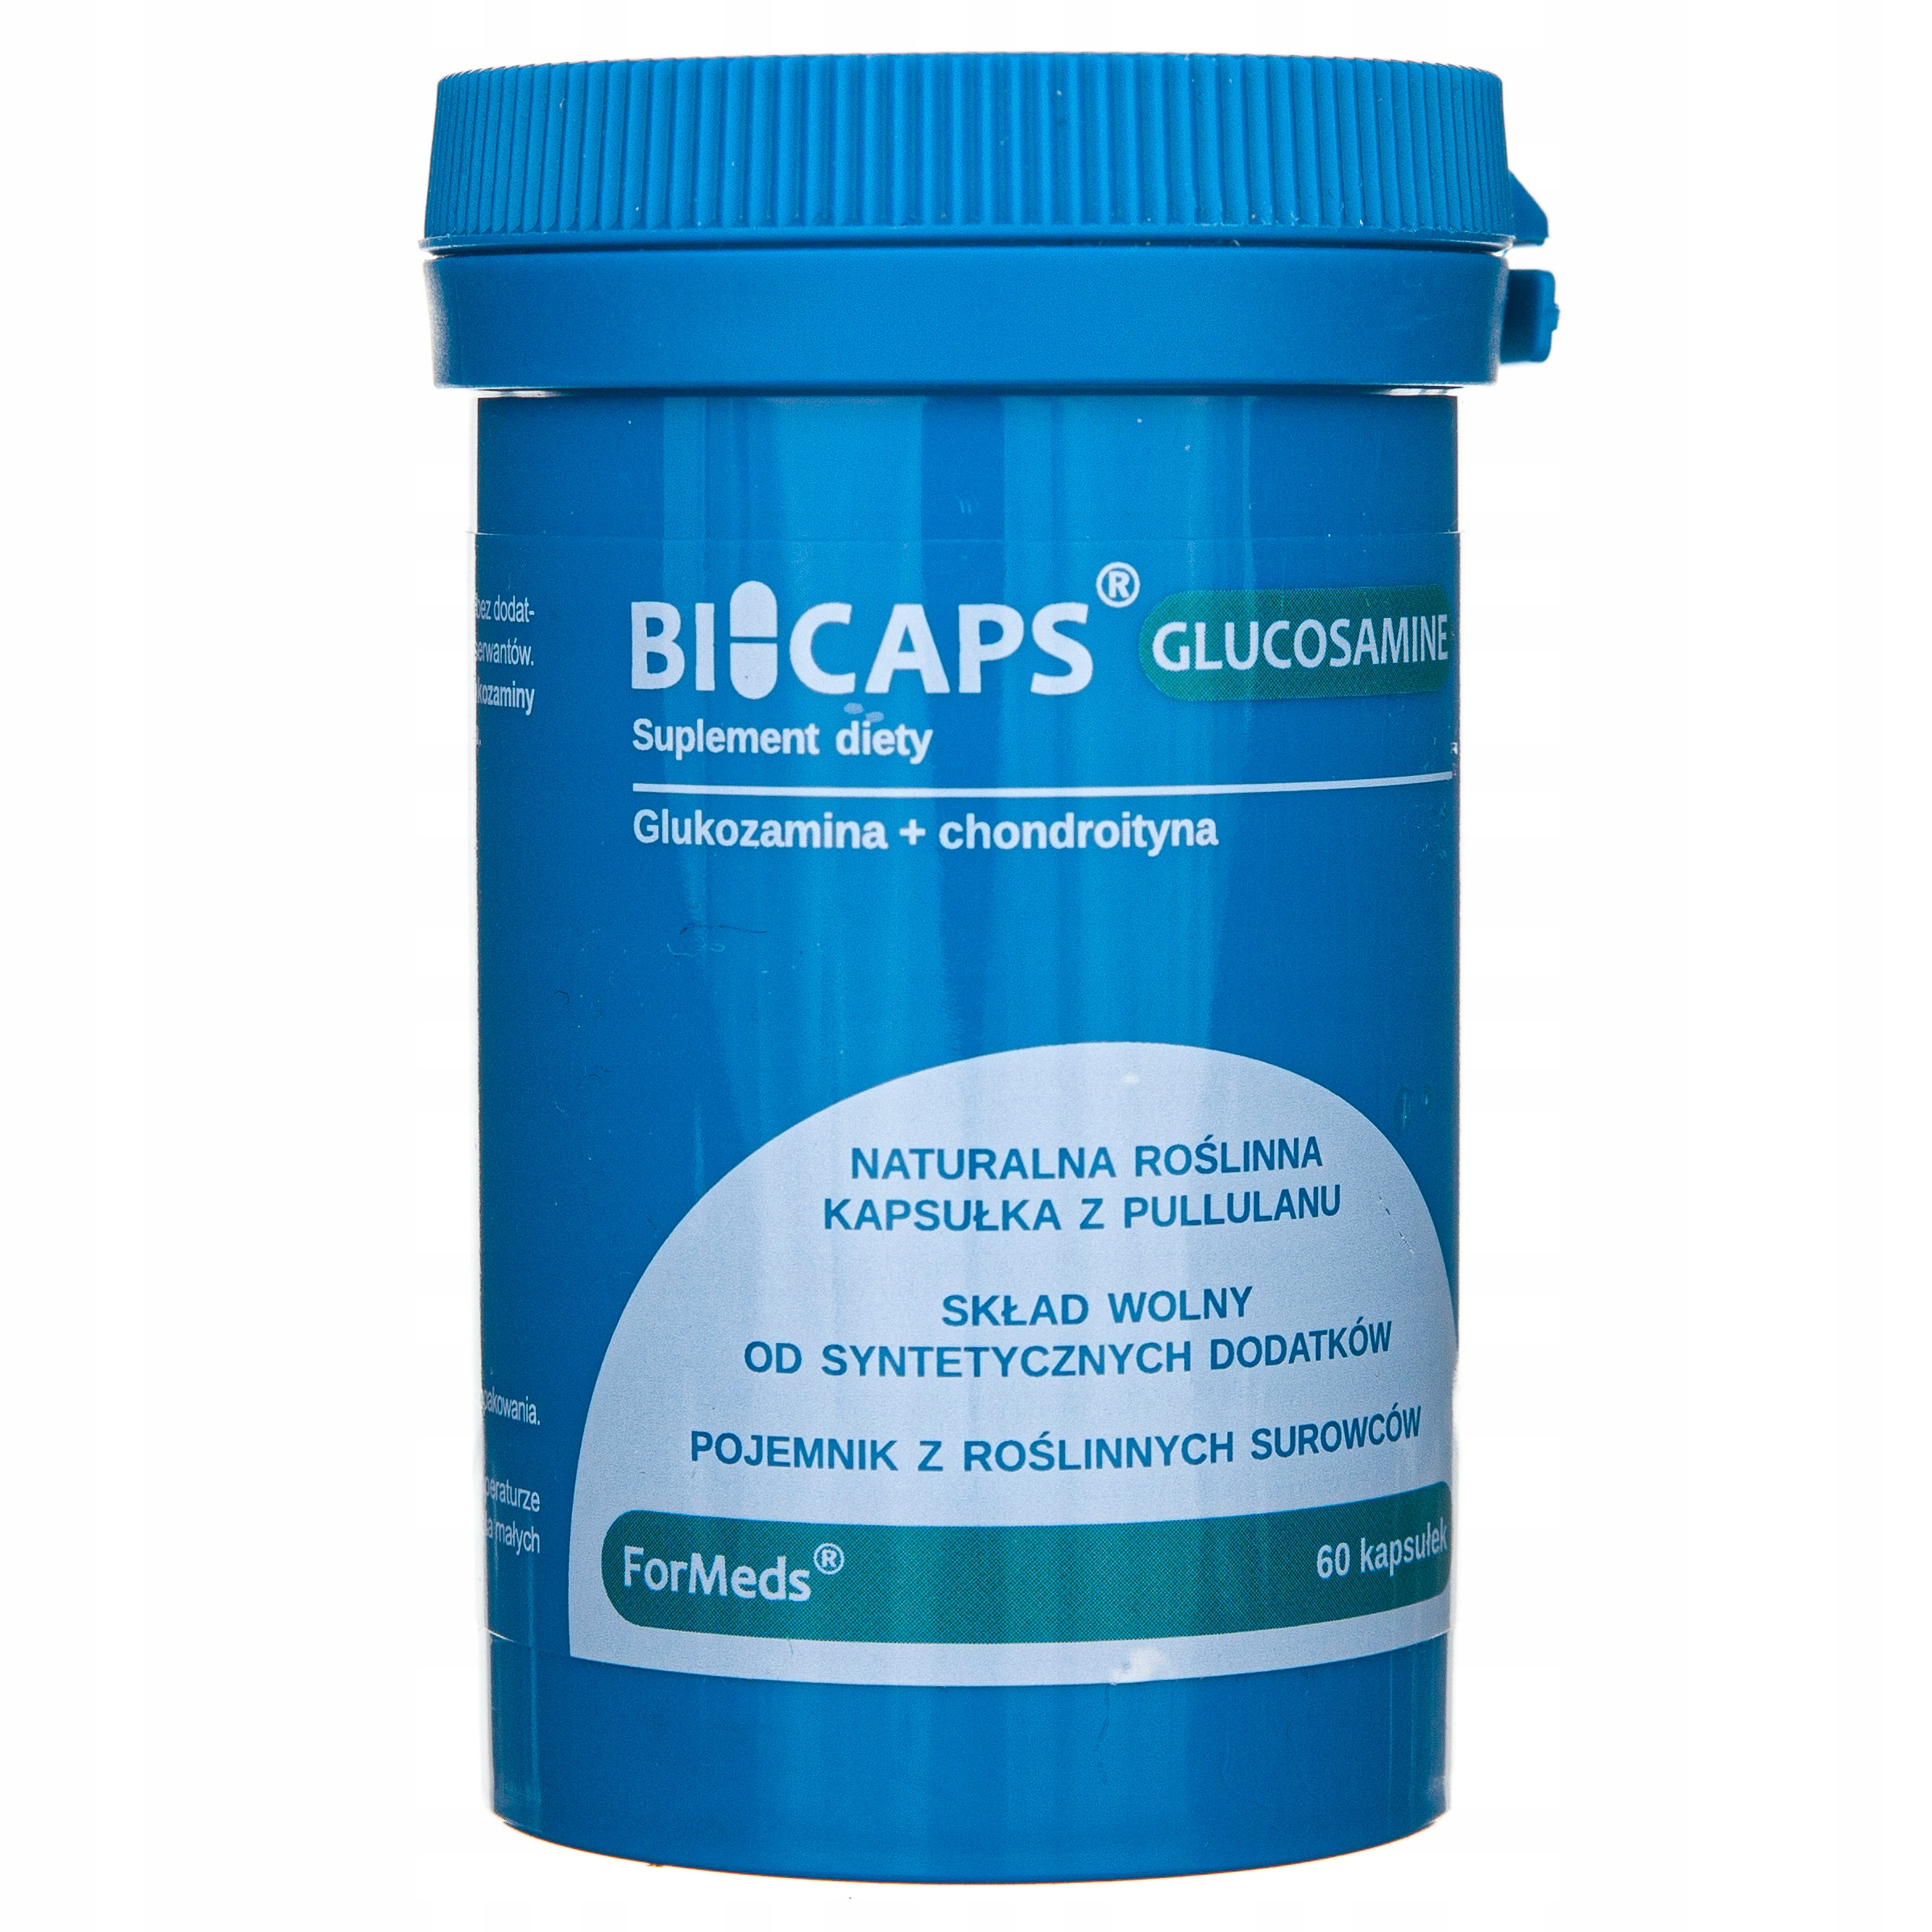 Bicaps Glucosamine od Formeds.